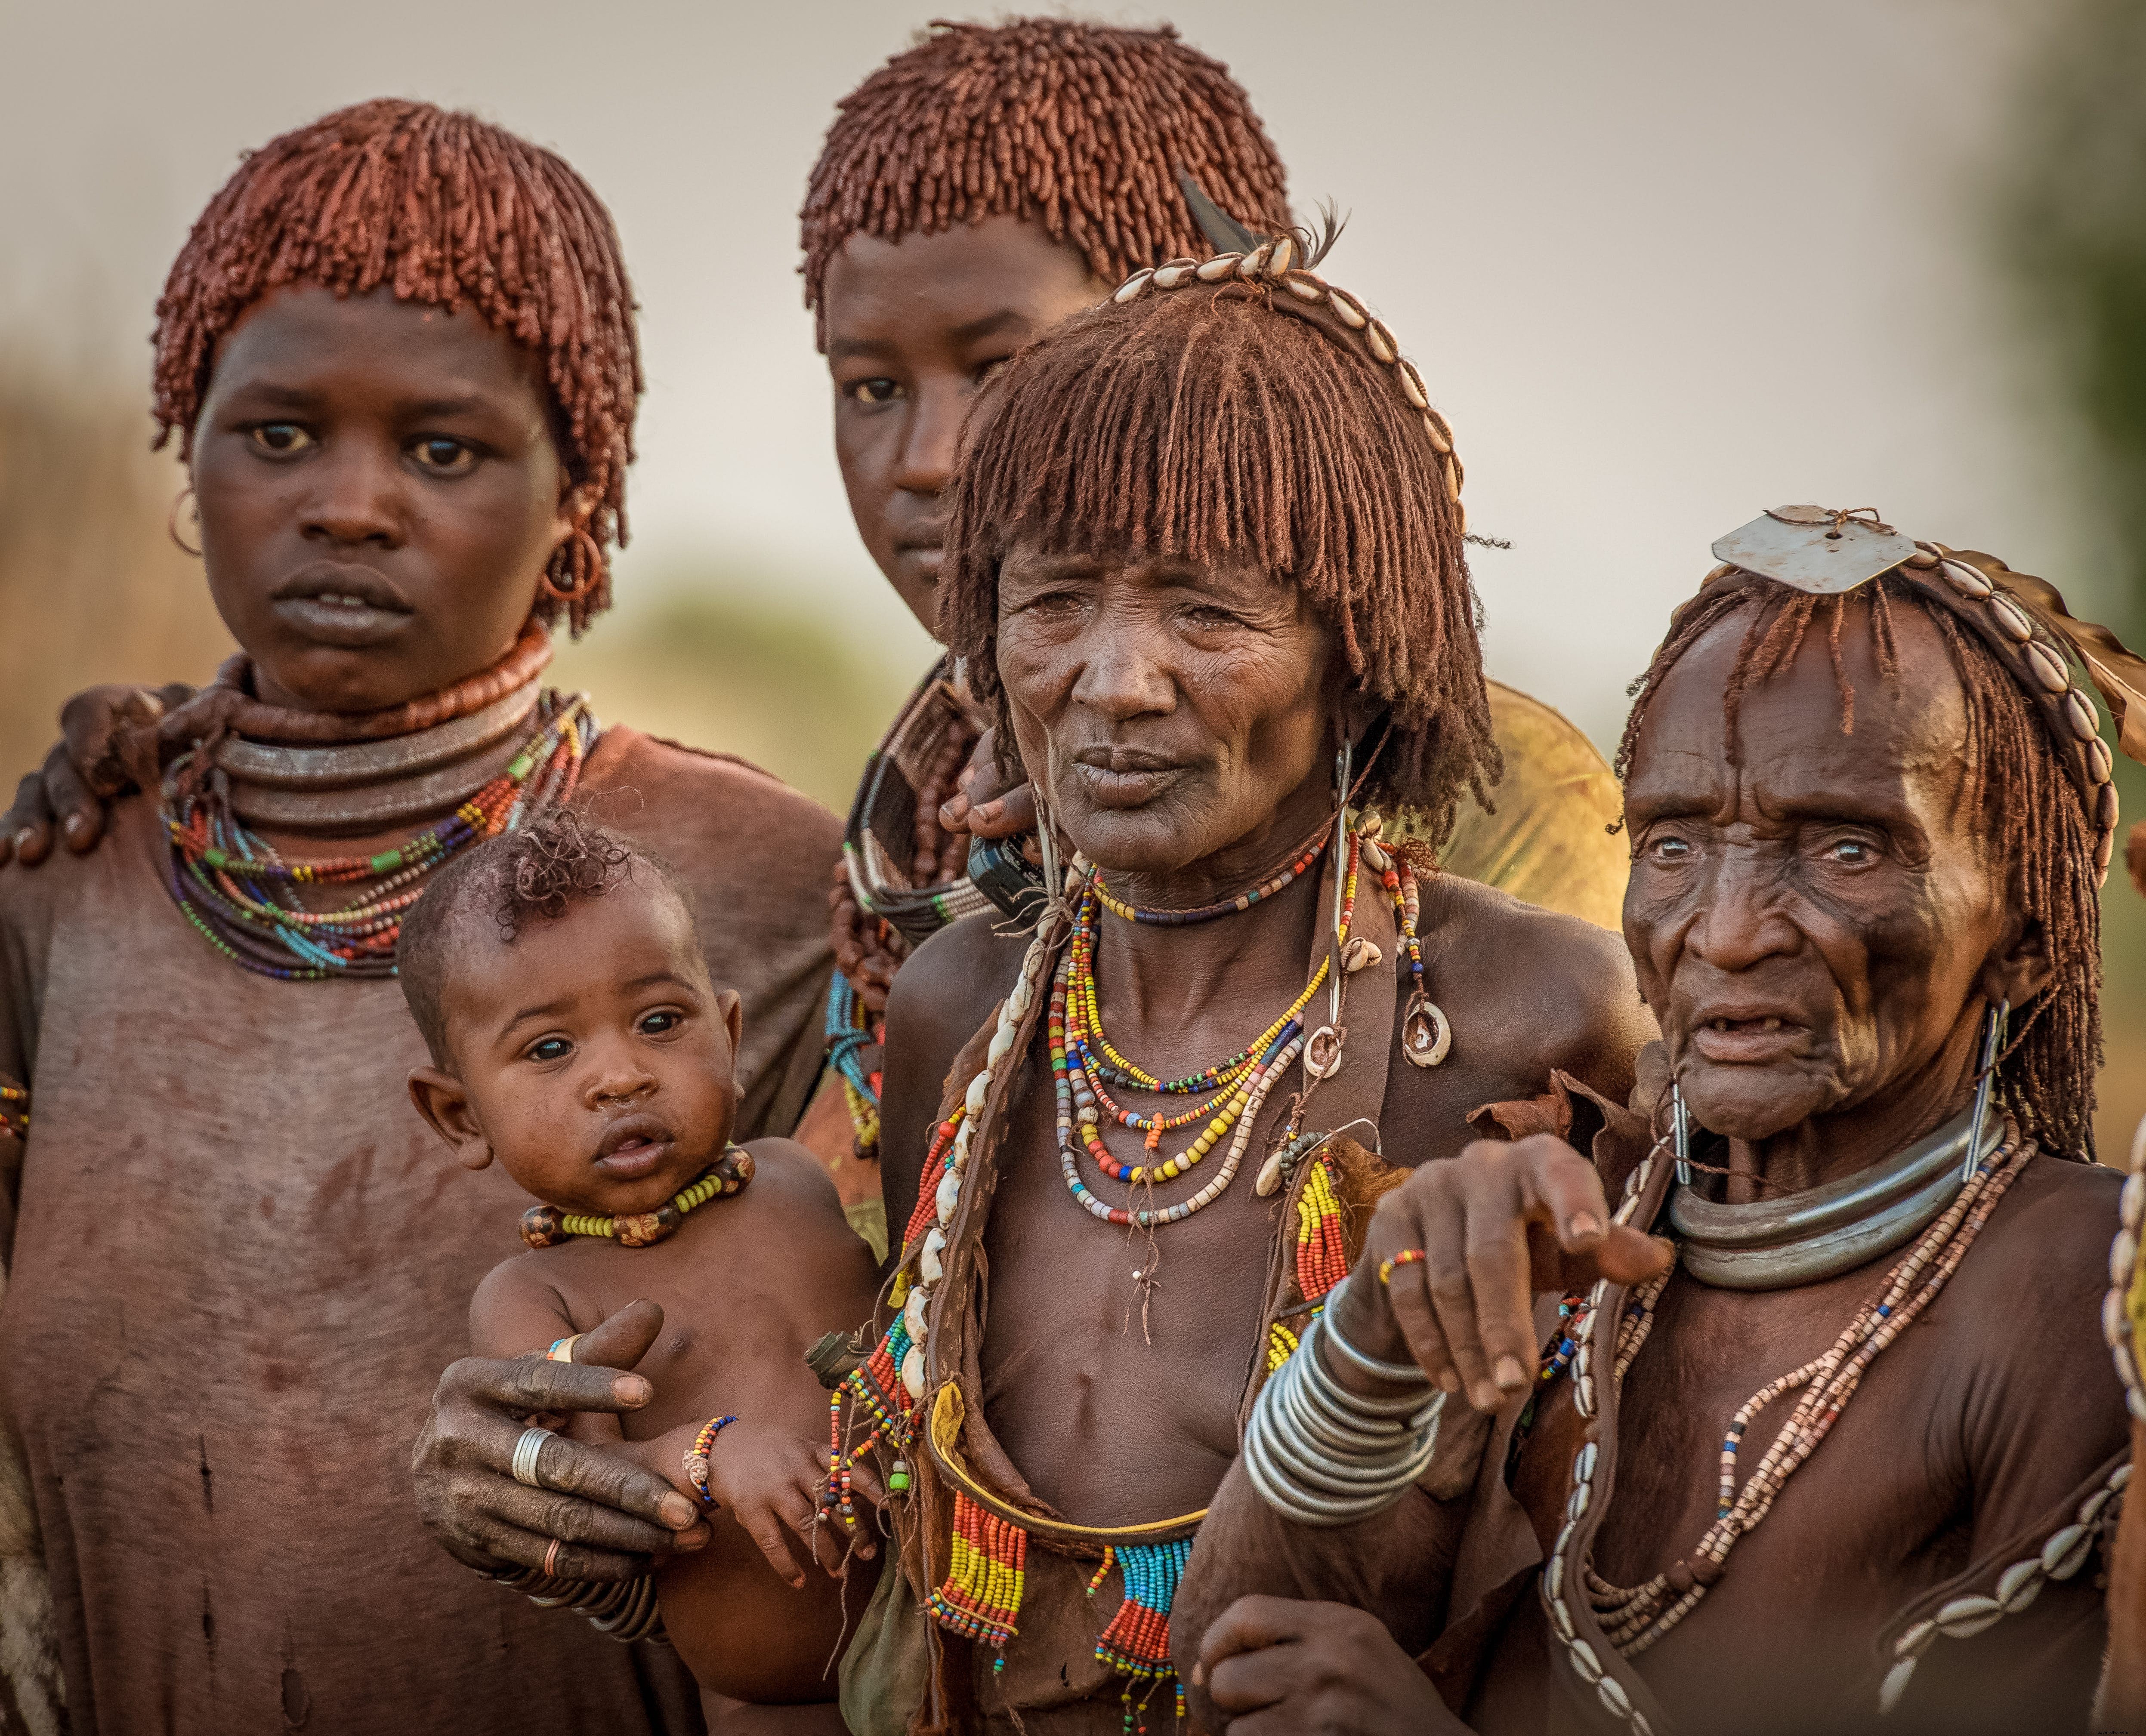 COVIDの最前線の看護師が撮影したアフリカの遠隔部族の素晴らしい写真をご覧ください 